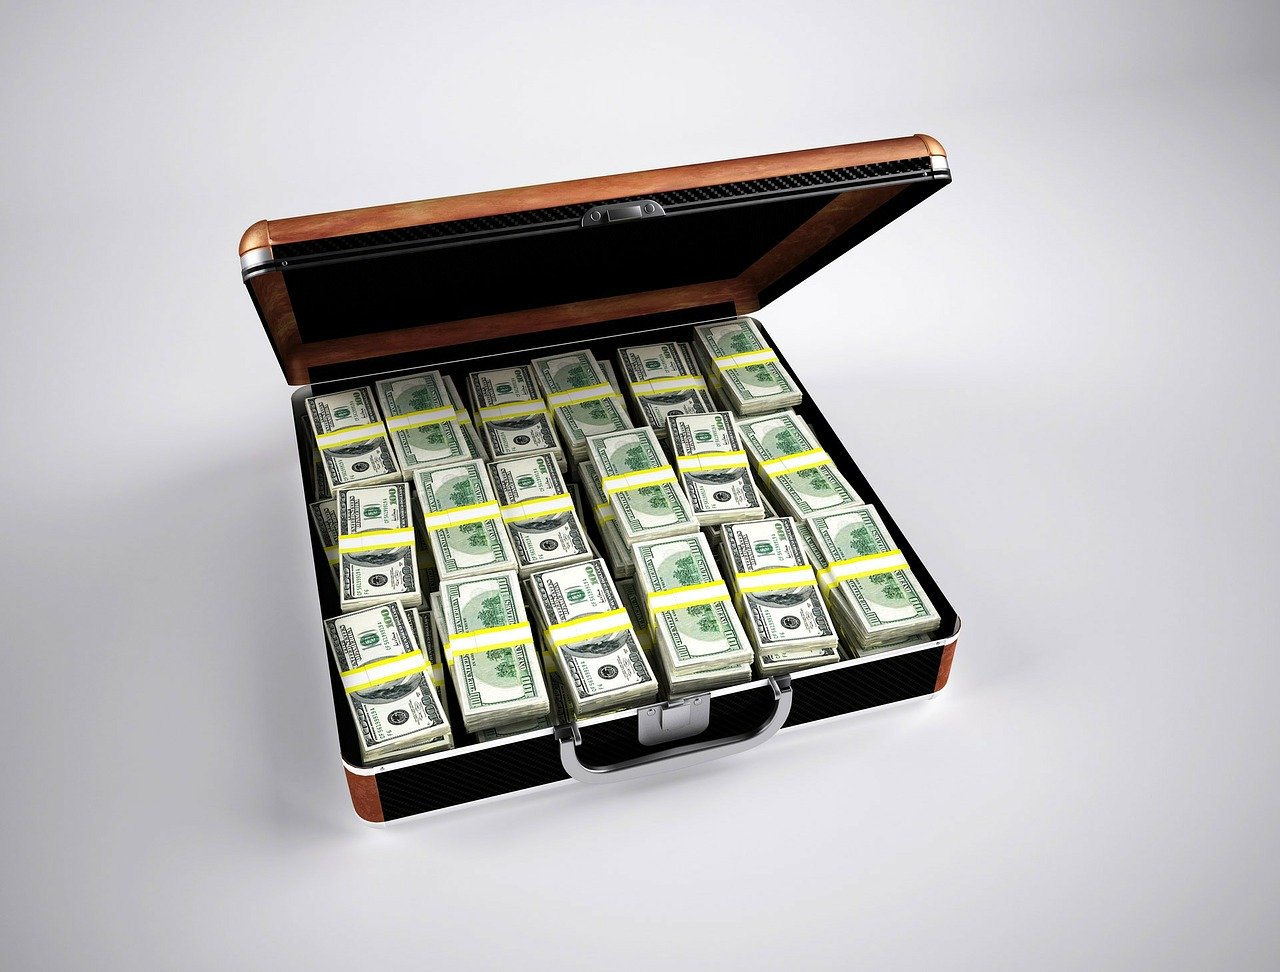 money in a briefcase